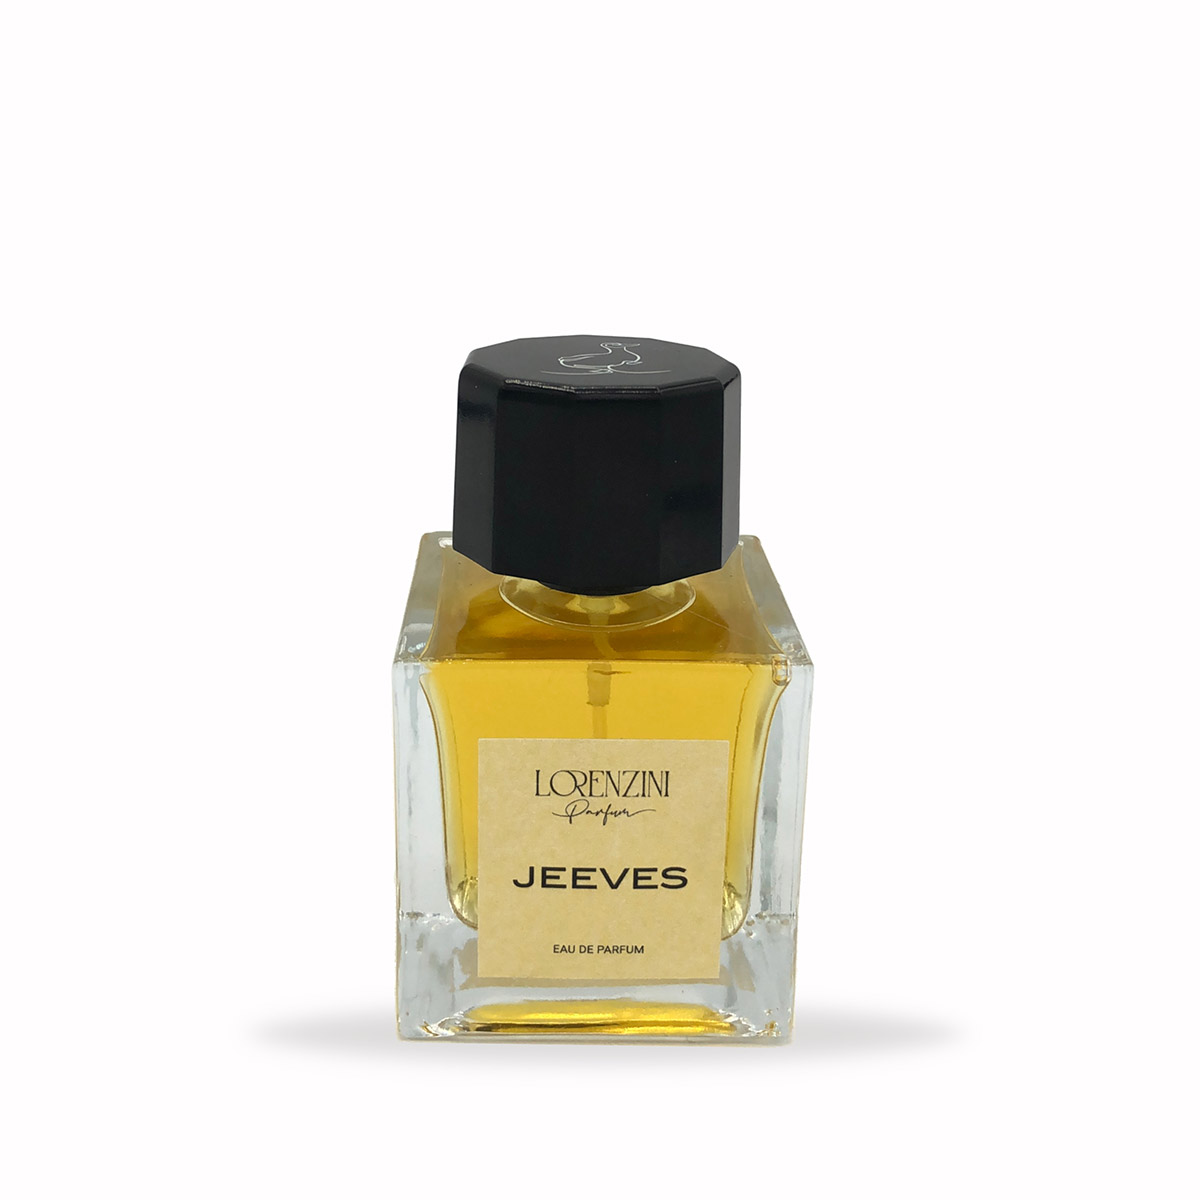 Lorenzini Parfum presenta con orgoglio Jeeves, un'ode al fascino senza tempo dell'eleganza maschile. Ispirato al celebre valletto dei libri di Wodehouse